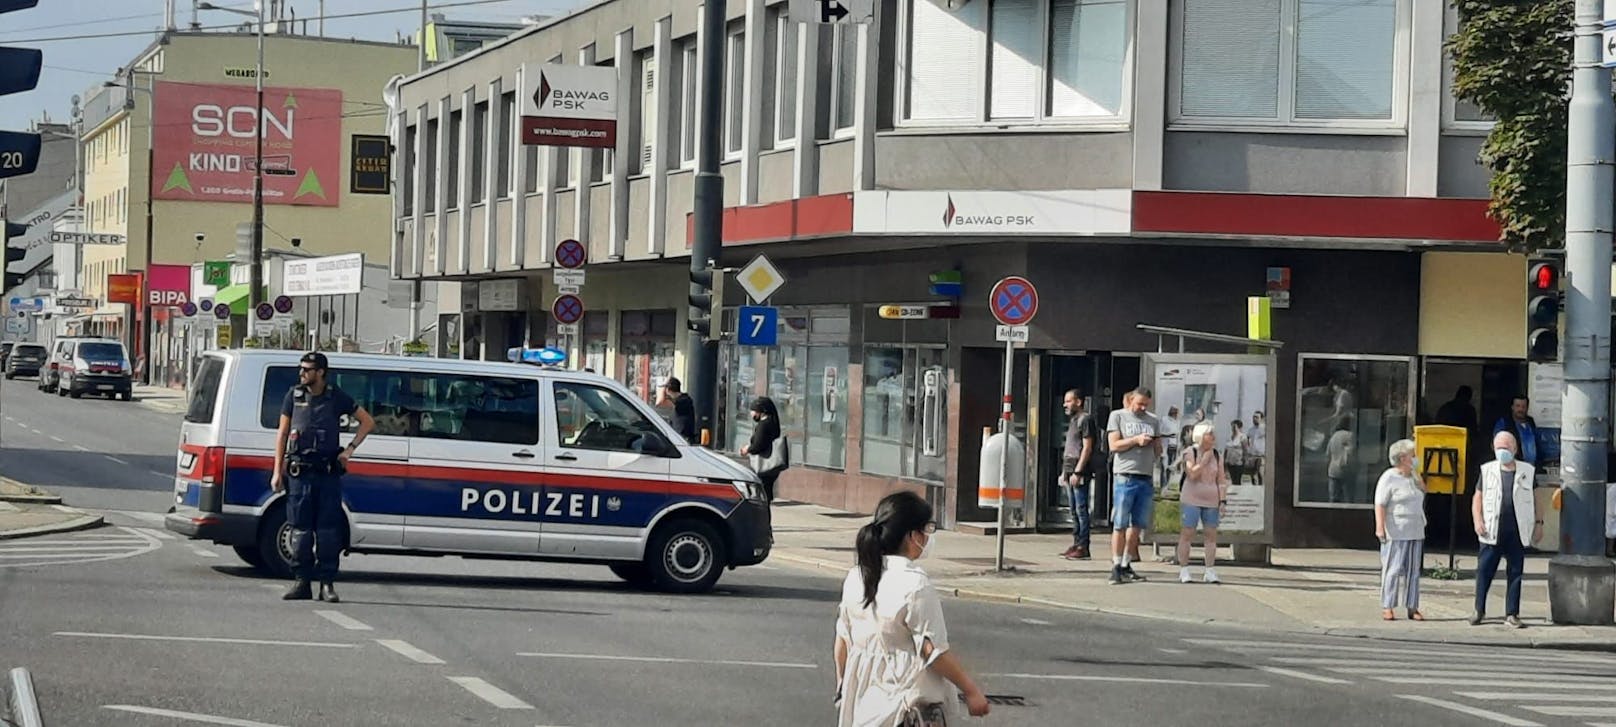 Die Gegend rund um den Tatort in der&nbsp;Berlagasse 7 in Wien-Floridsdorf wurde abgesperrt, der Polizeihubschrauber kreiste.